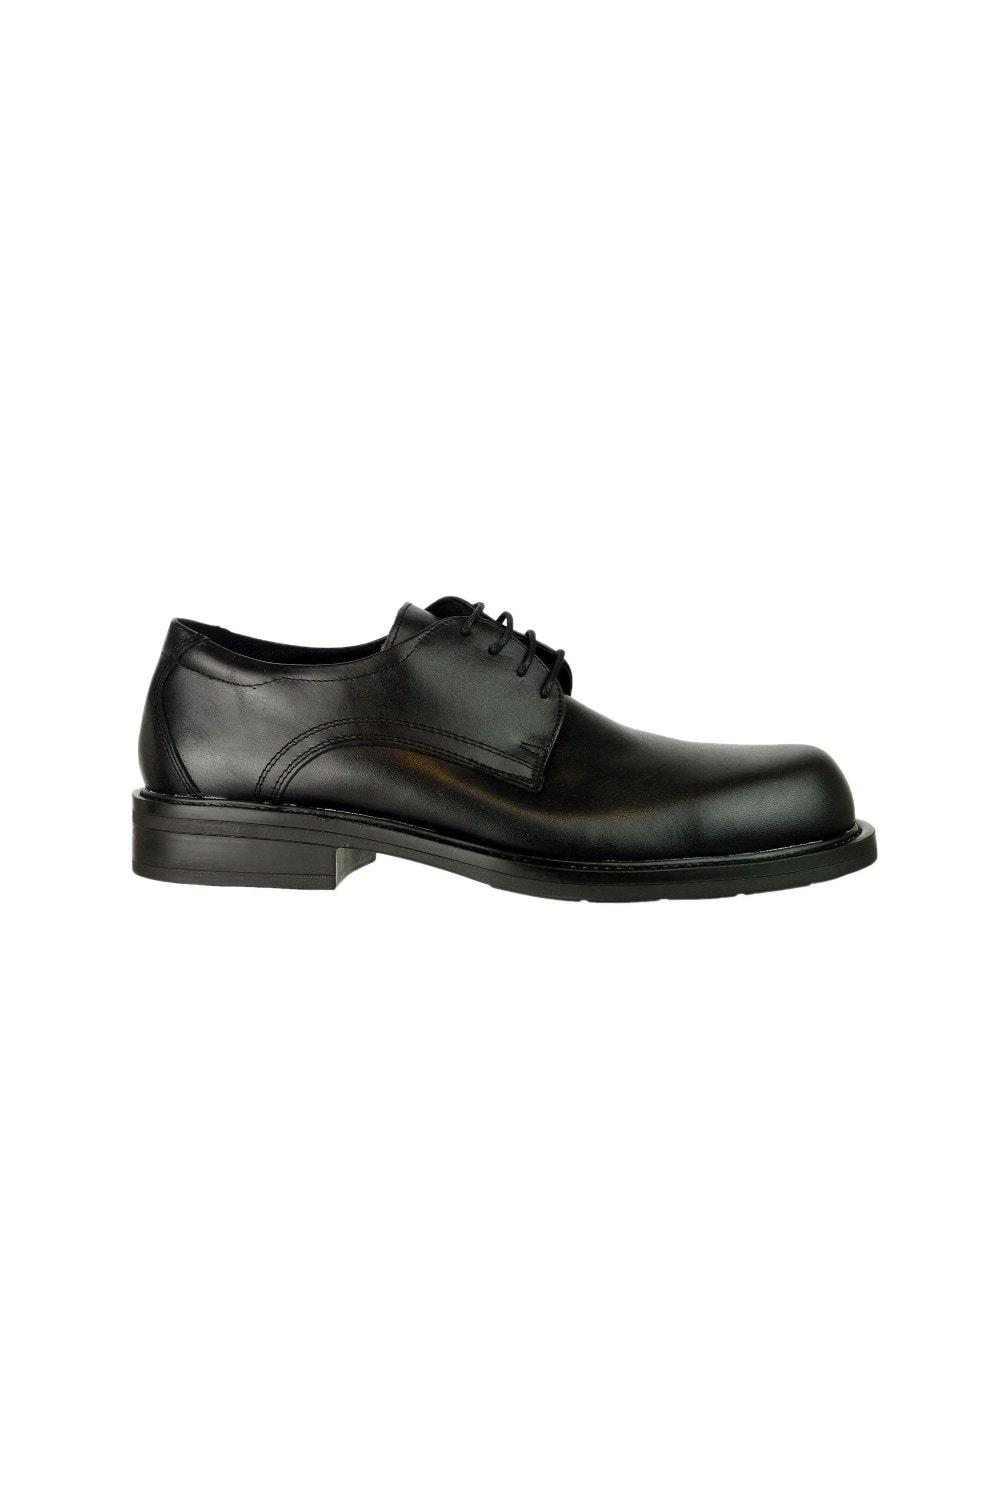 Active Duty CT (54318) Обувь Обувь Magnum, черный